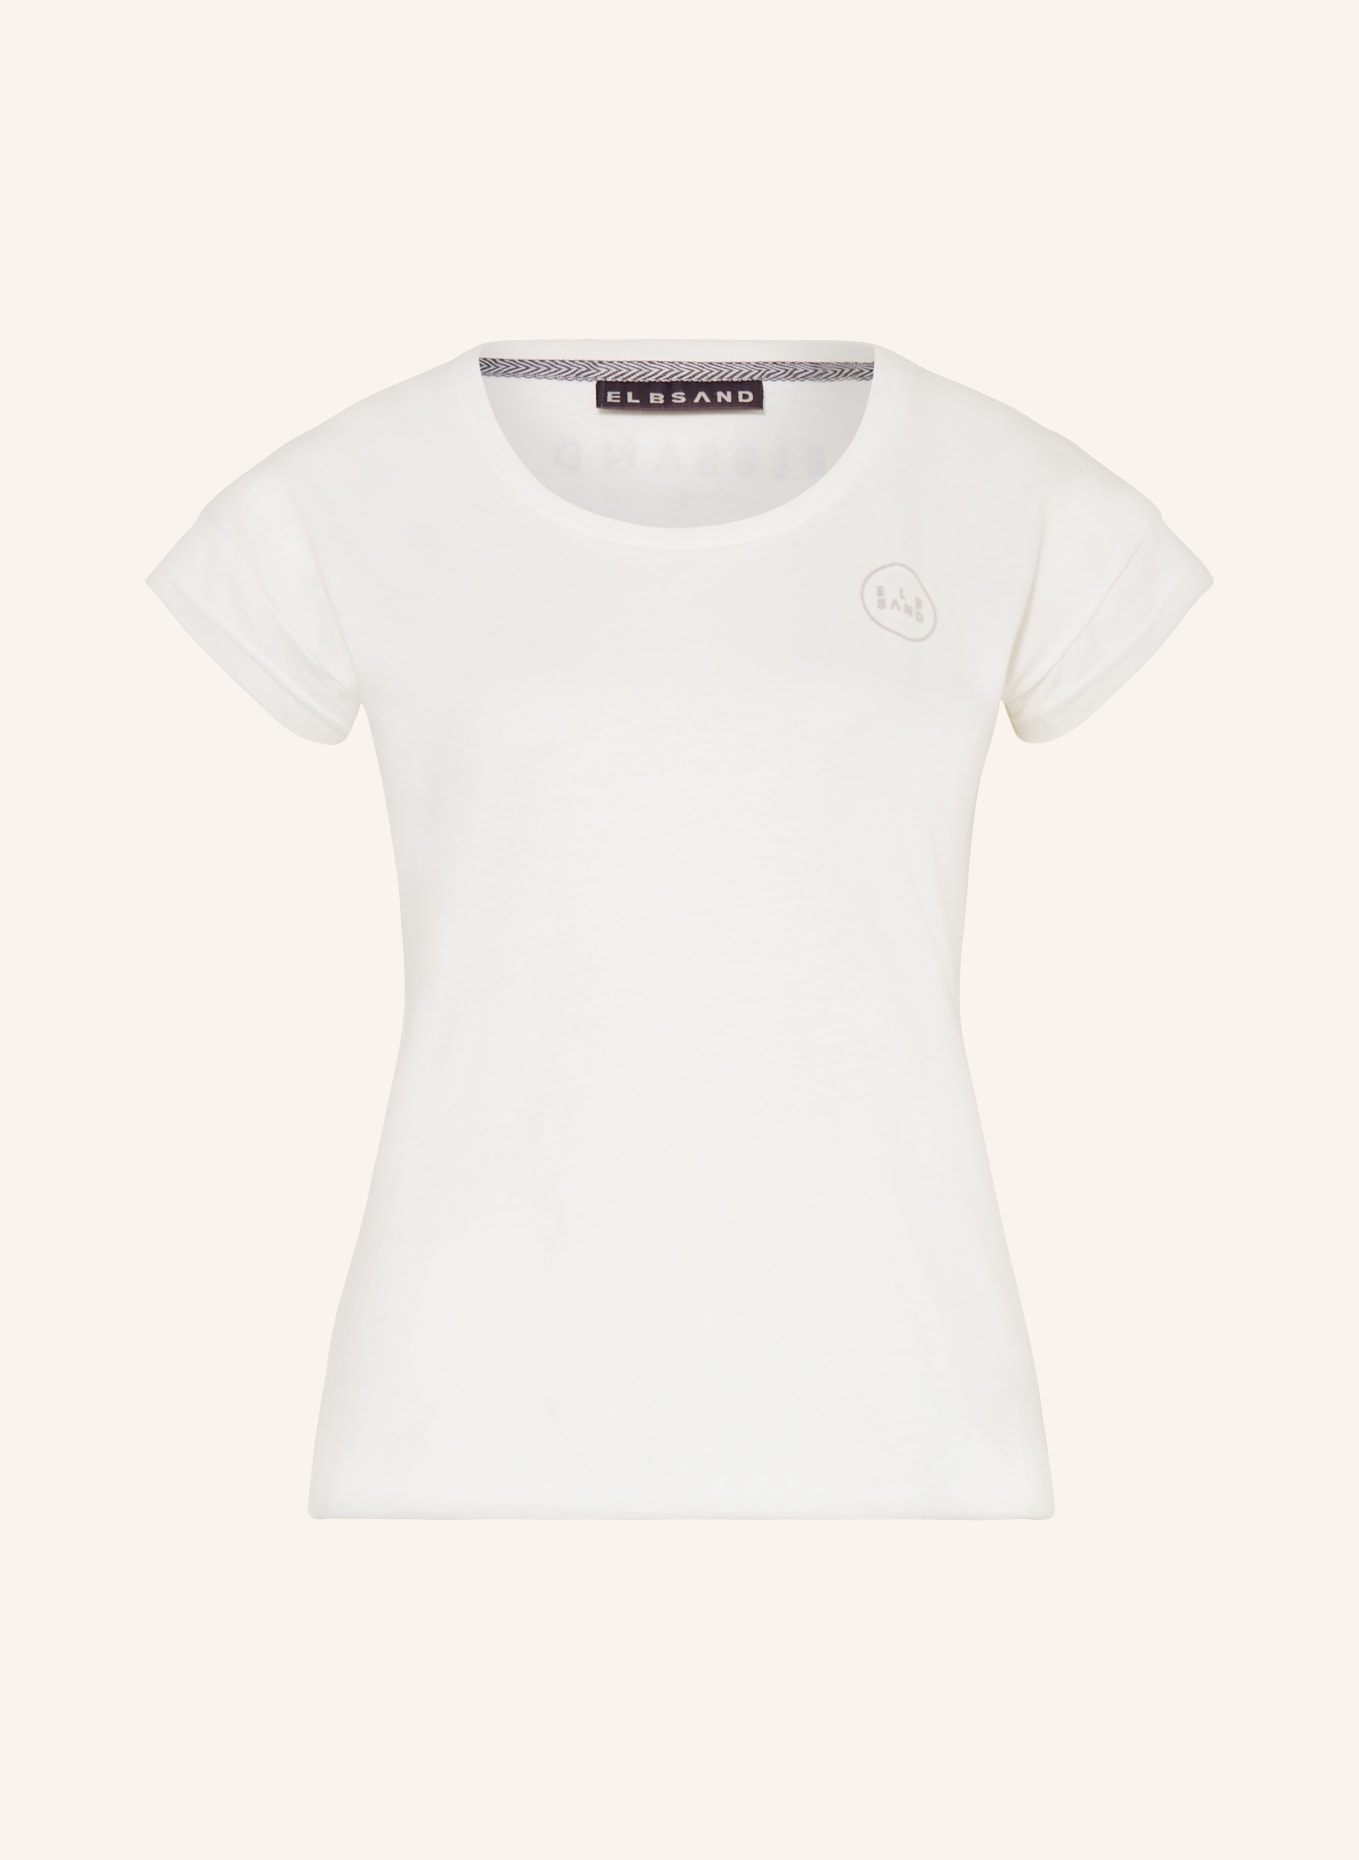 ELBSAND T-Shirt RAGNE, Farbe: WEISS (Bild 1)